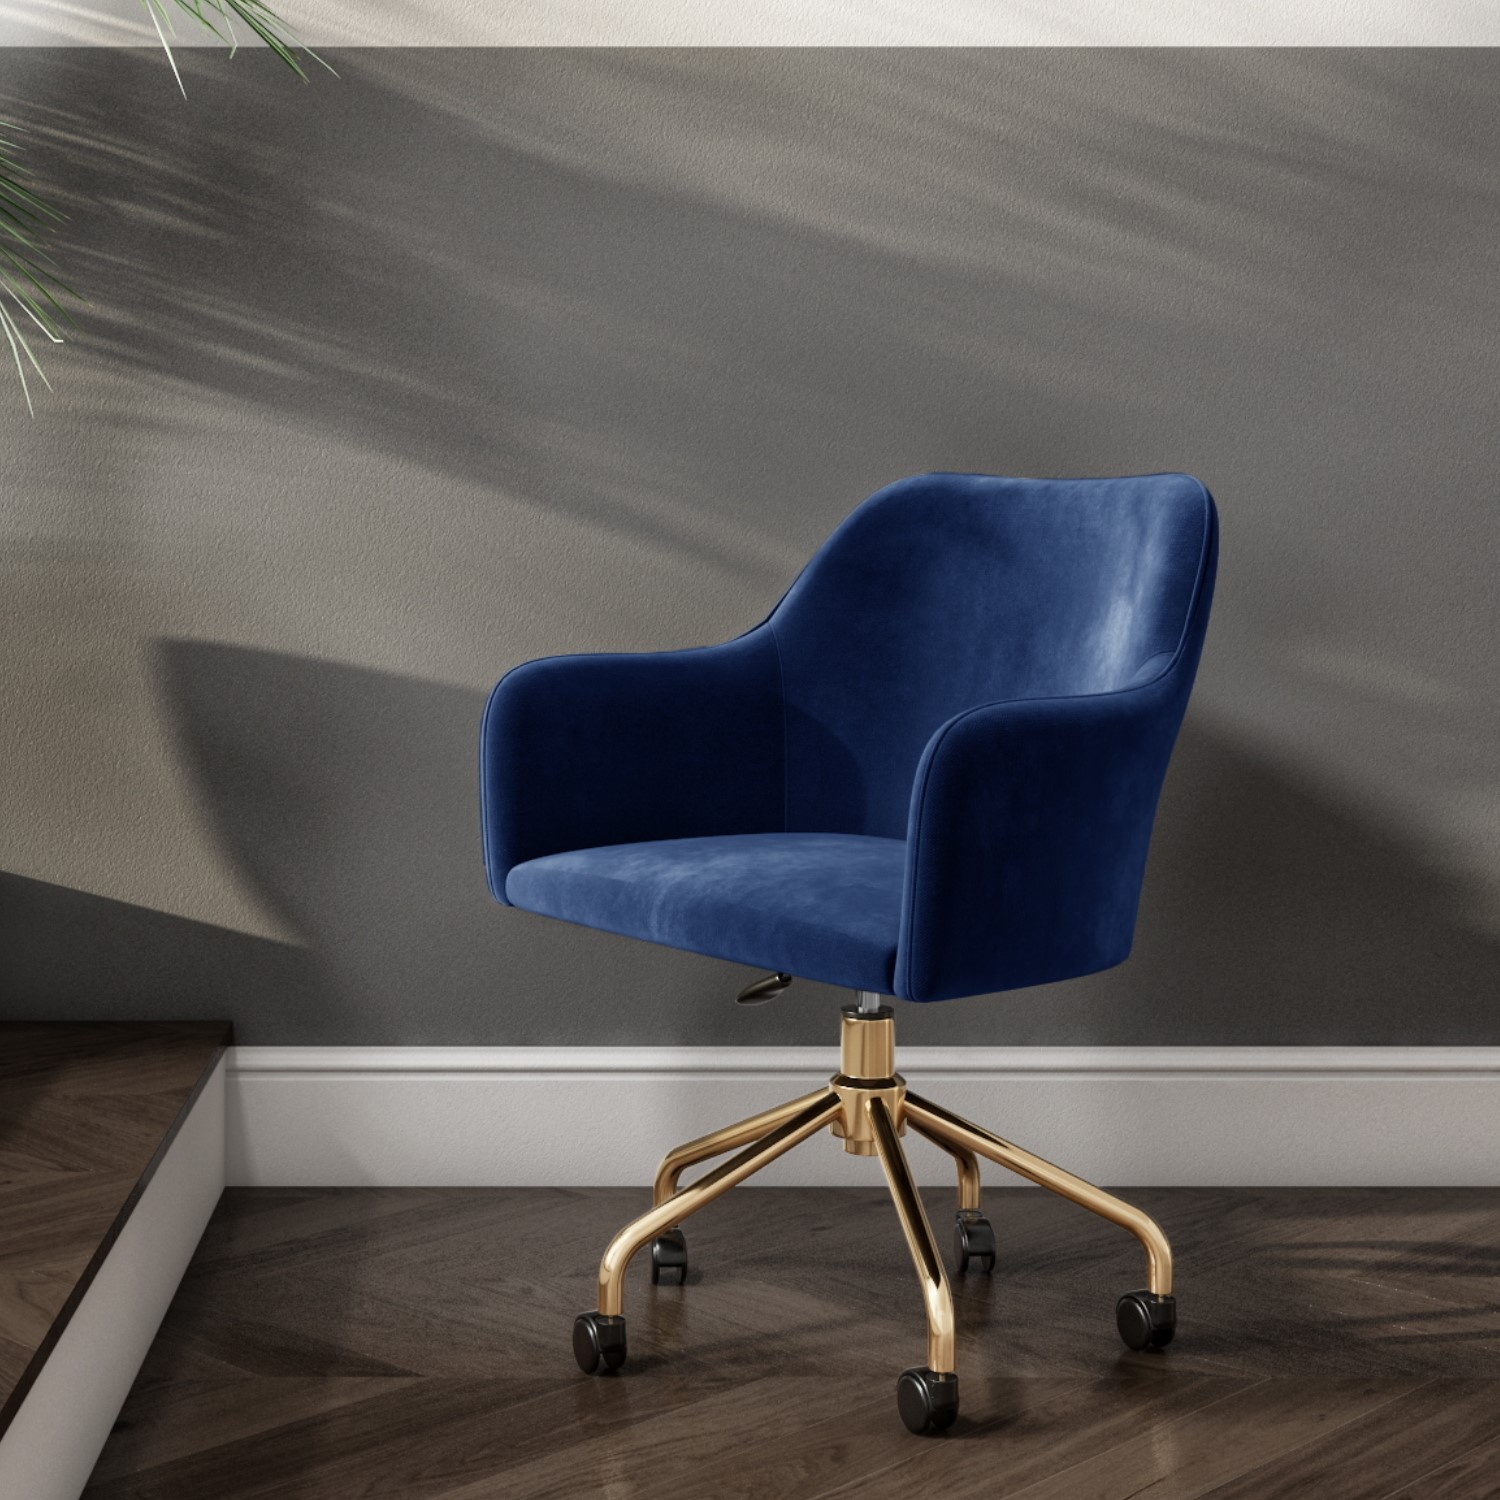 Navy Blue Velvet Office Swivel Chair, Blue Desk Chair With Wheels